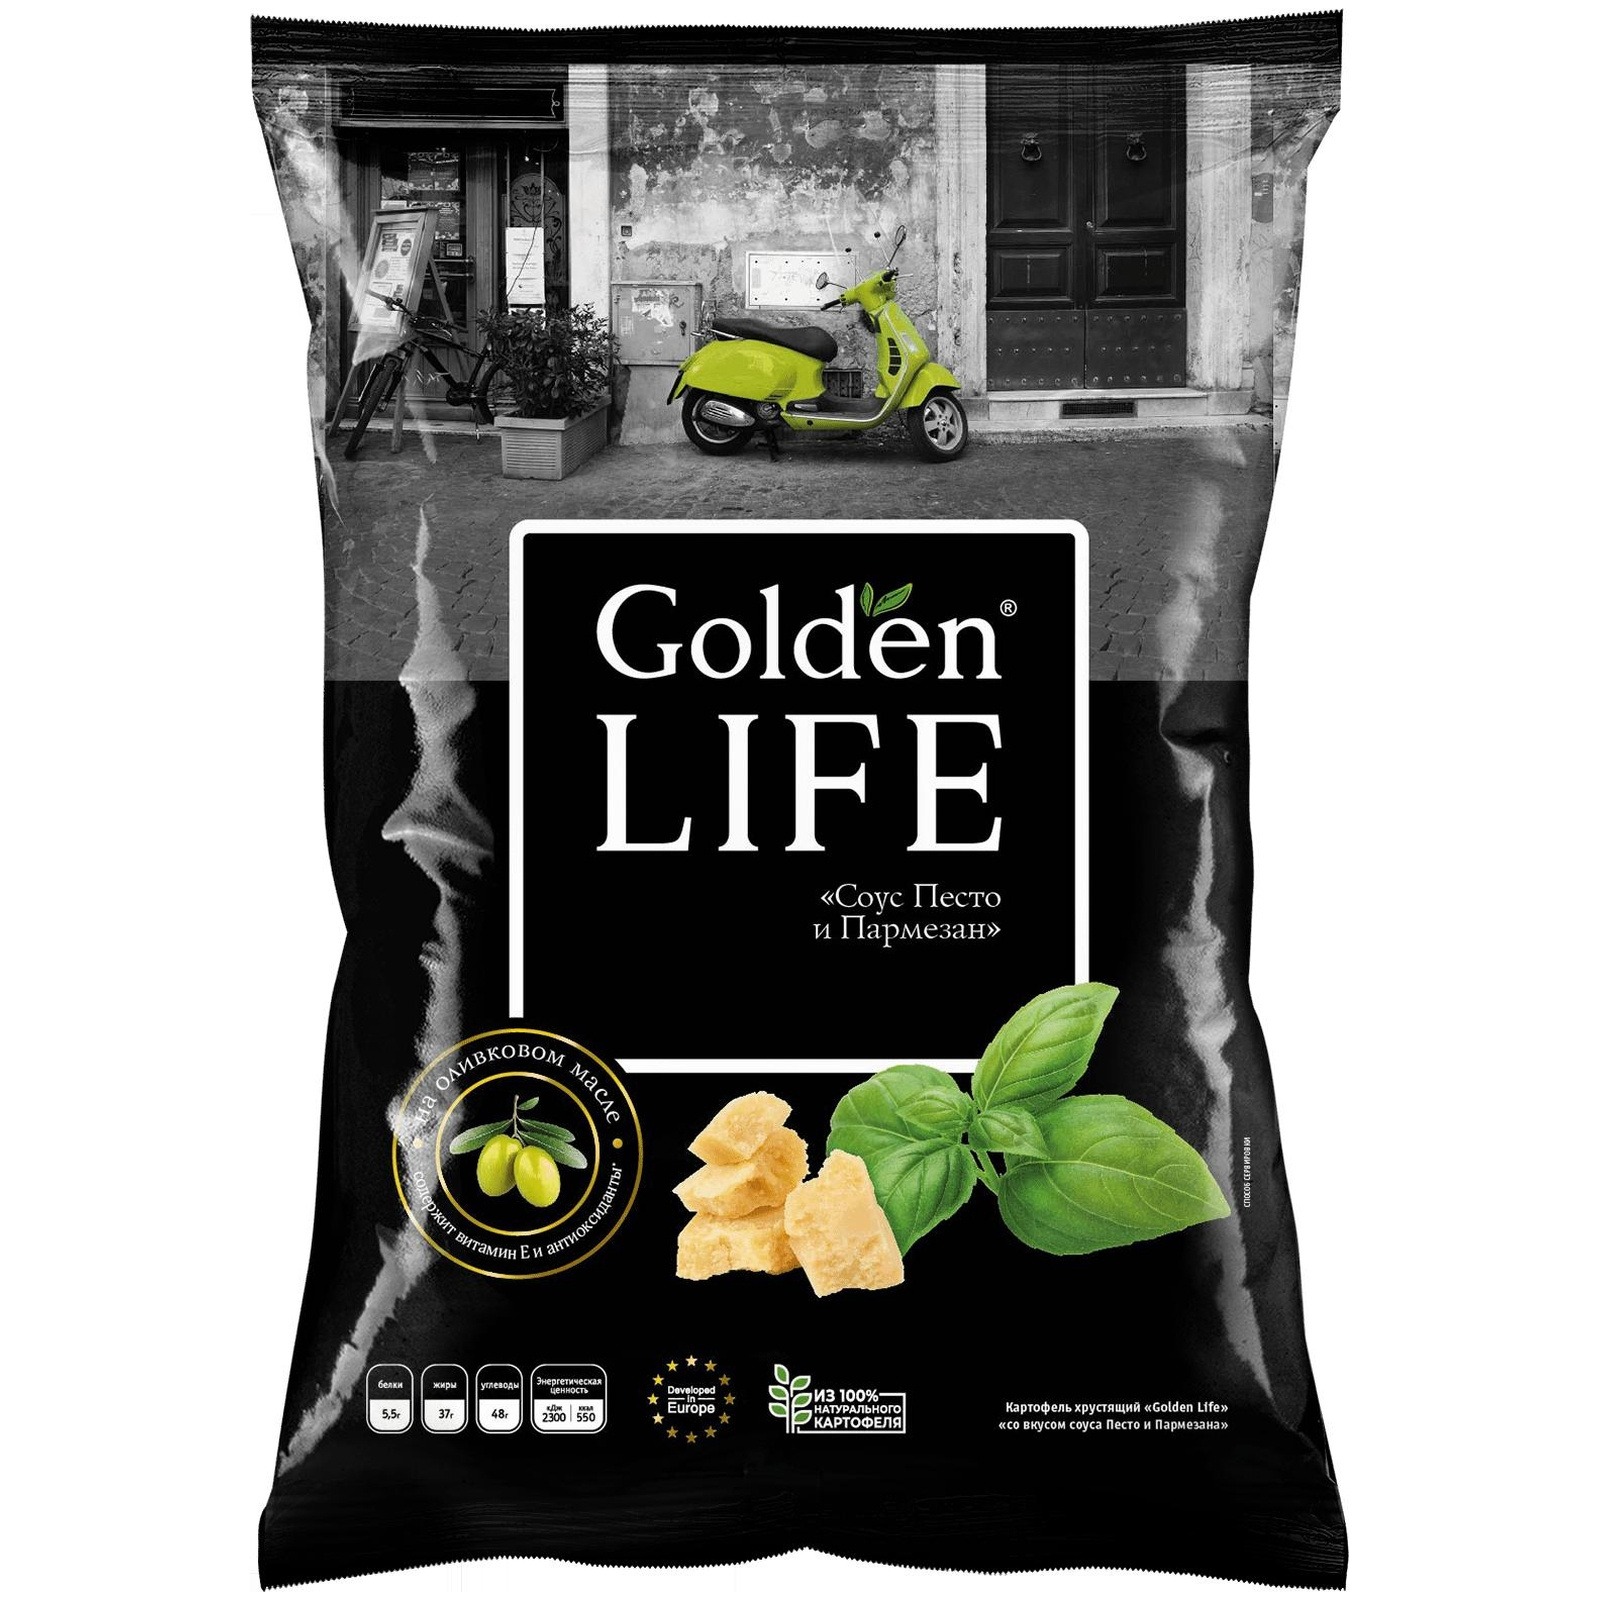 Чипсы Golden Life картофельные песто и пармезан, 90 г чипсы golden life картофельные со вкусом лобстера 90 г